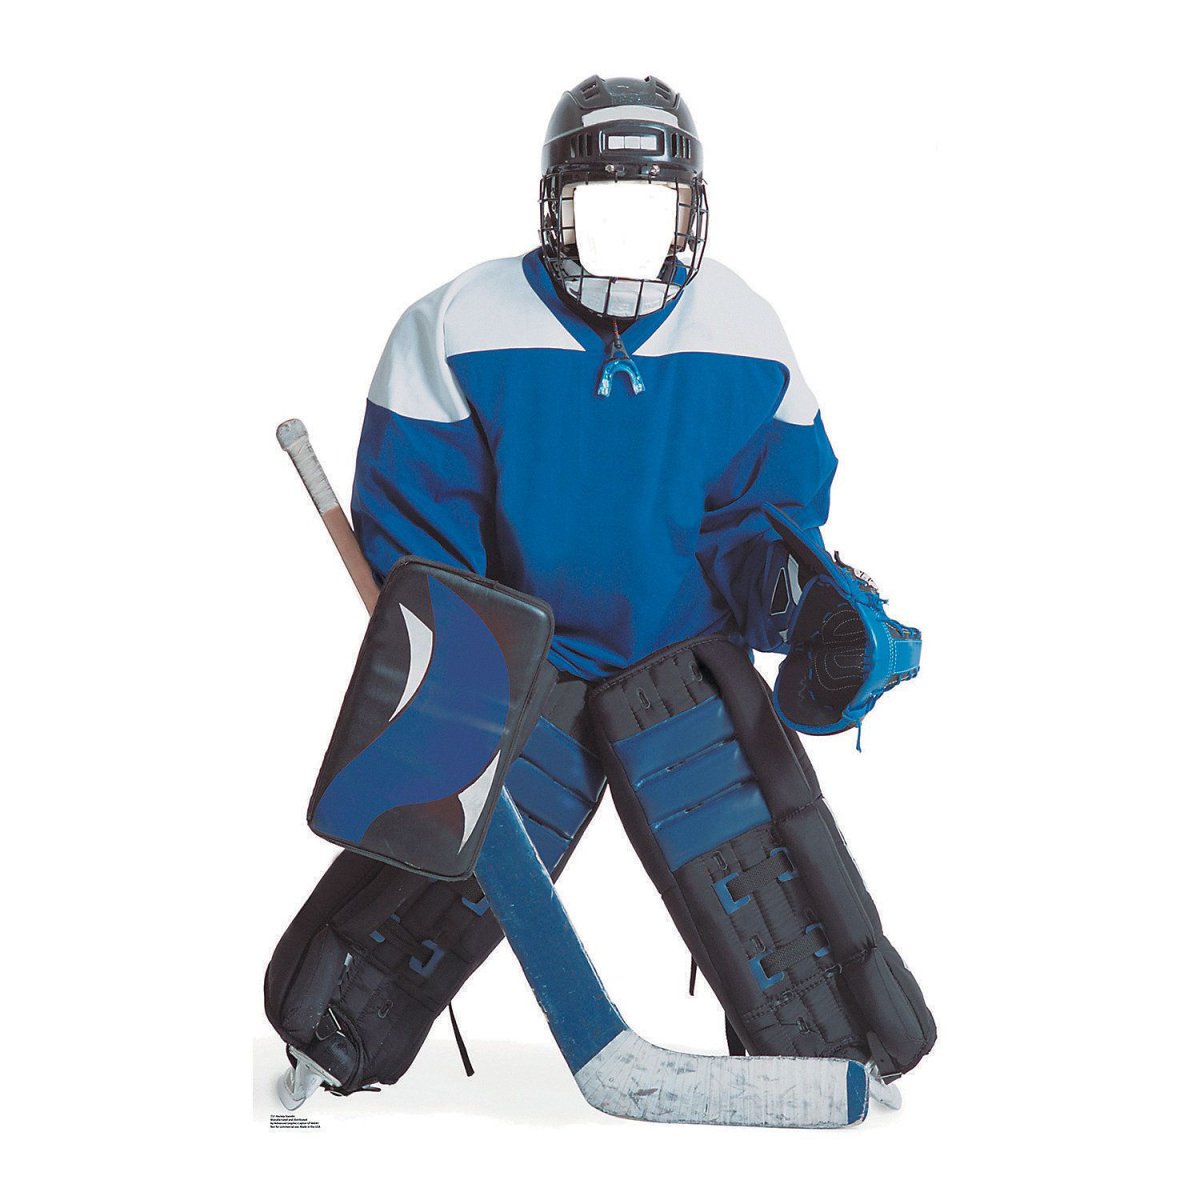 Bauer защитный набор для хоккея